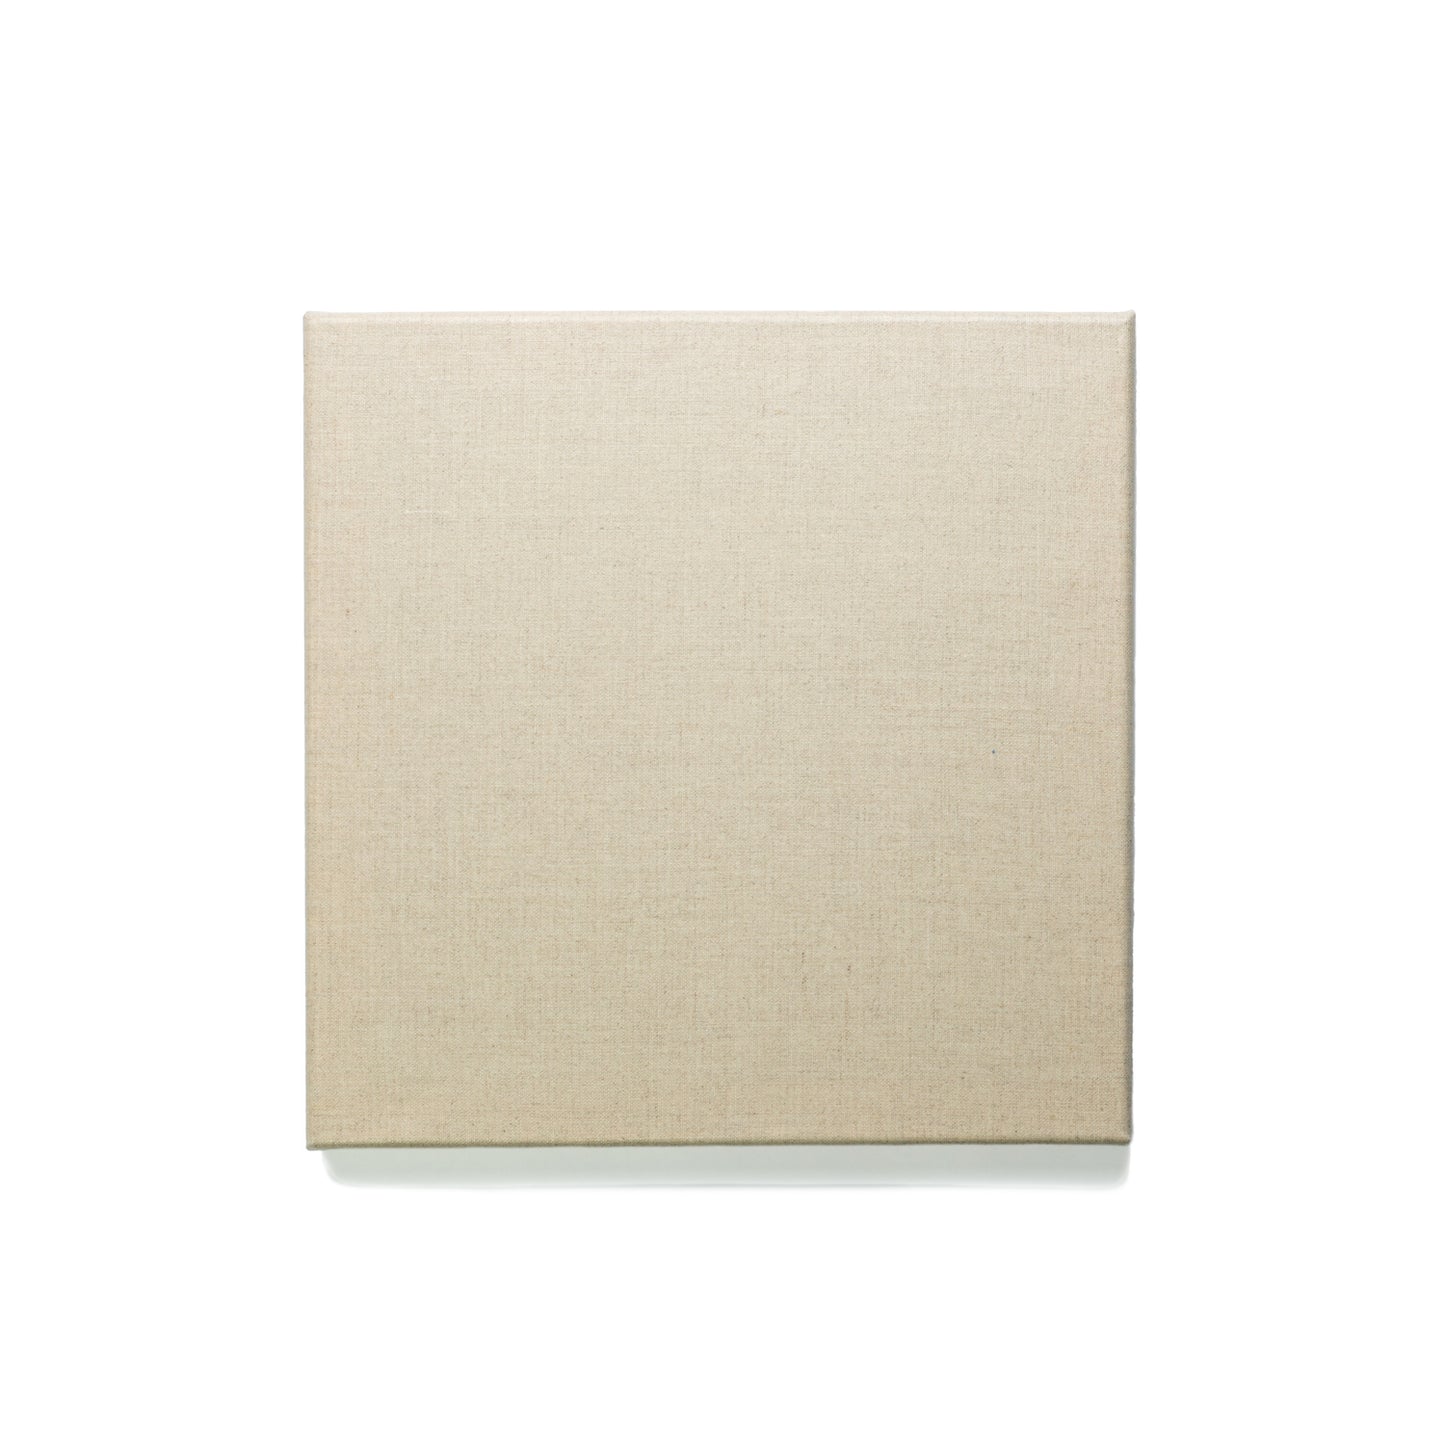 Pre-Gessoed Linen Canvas Case Packs